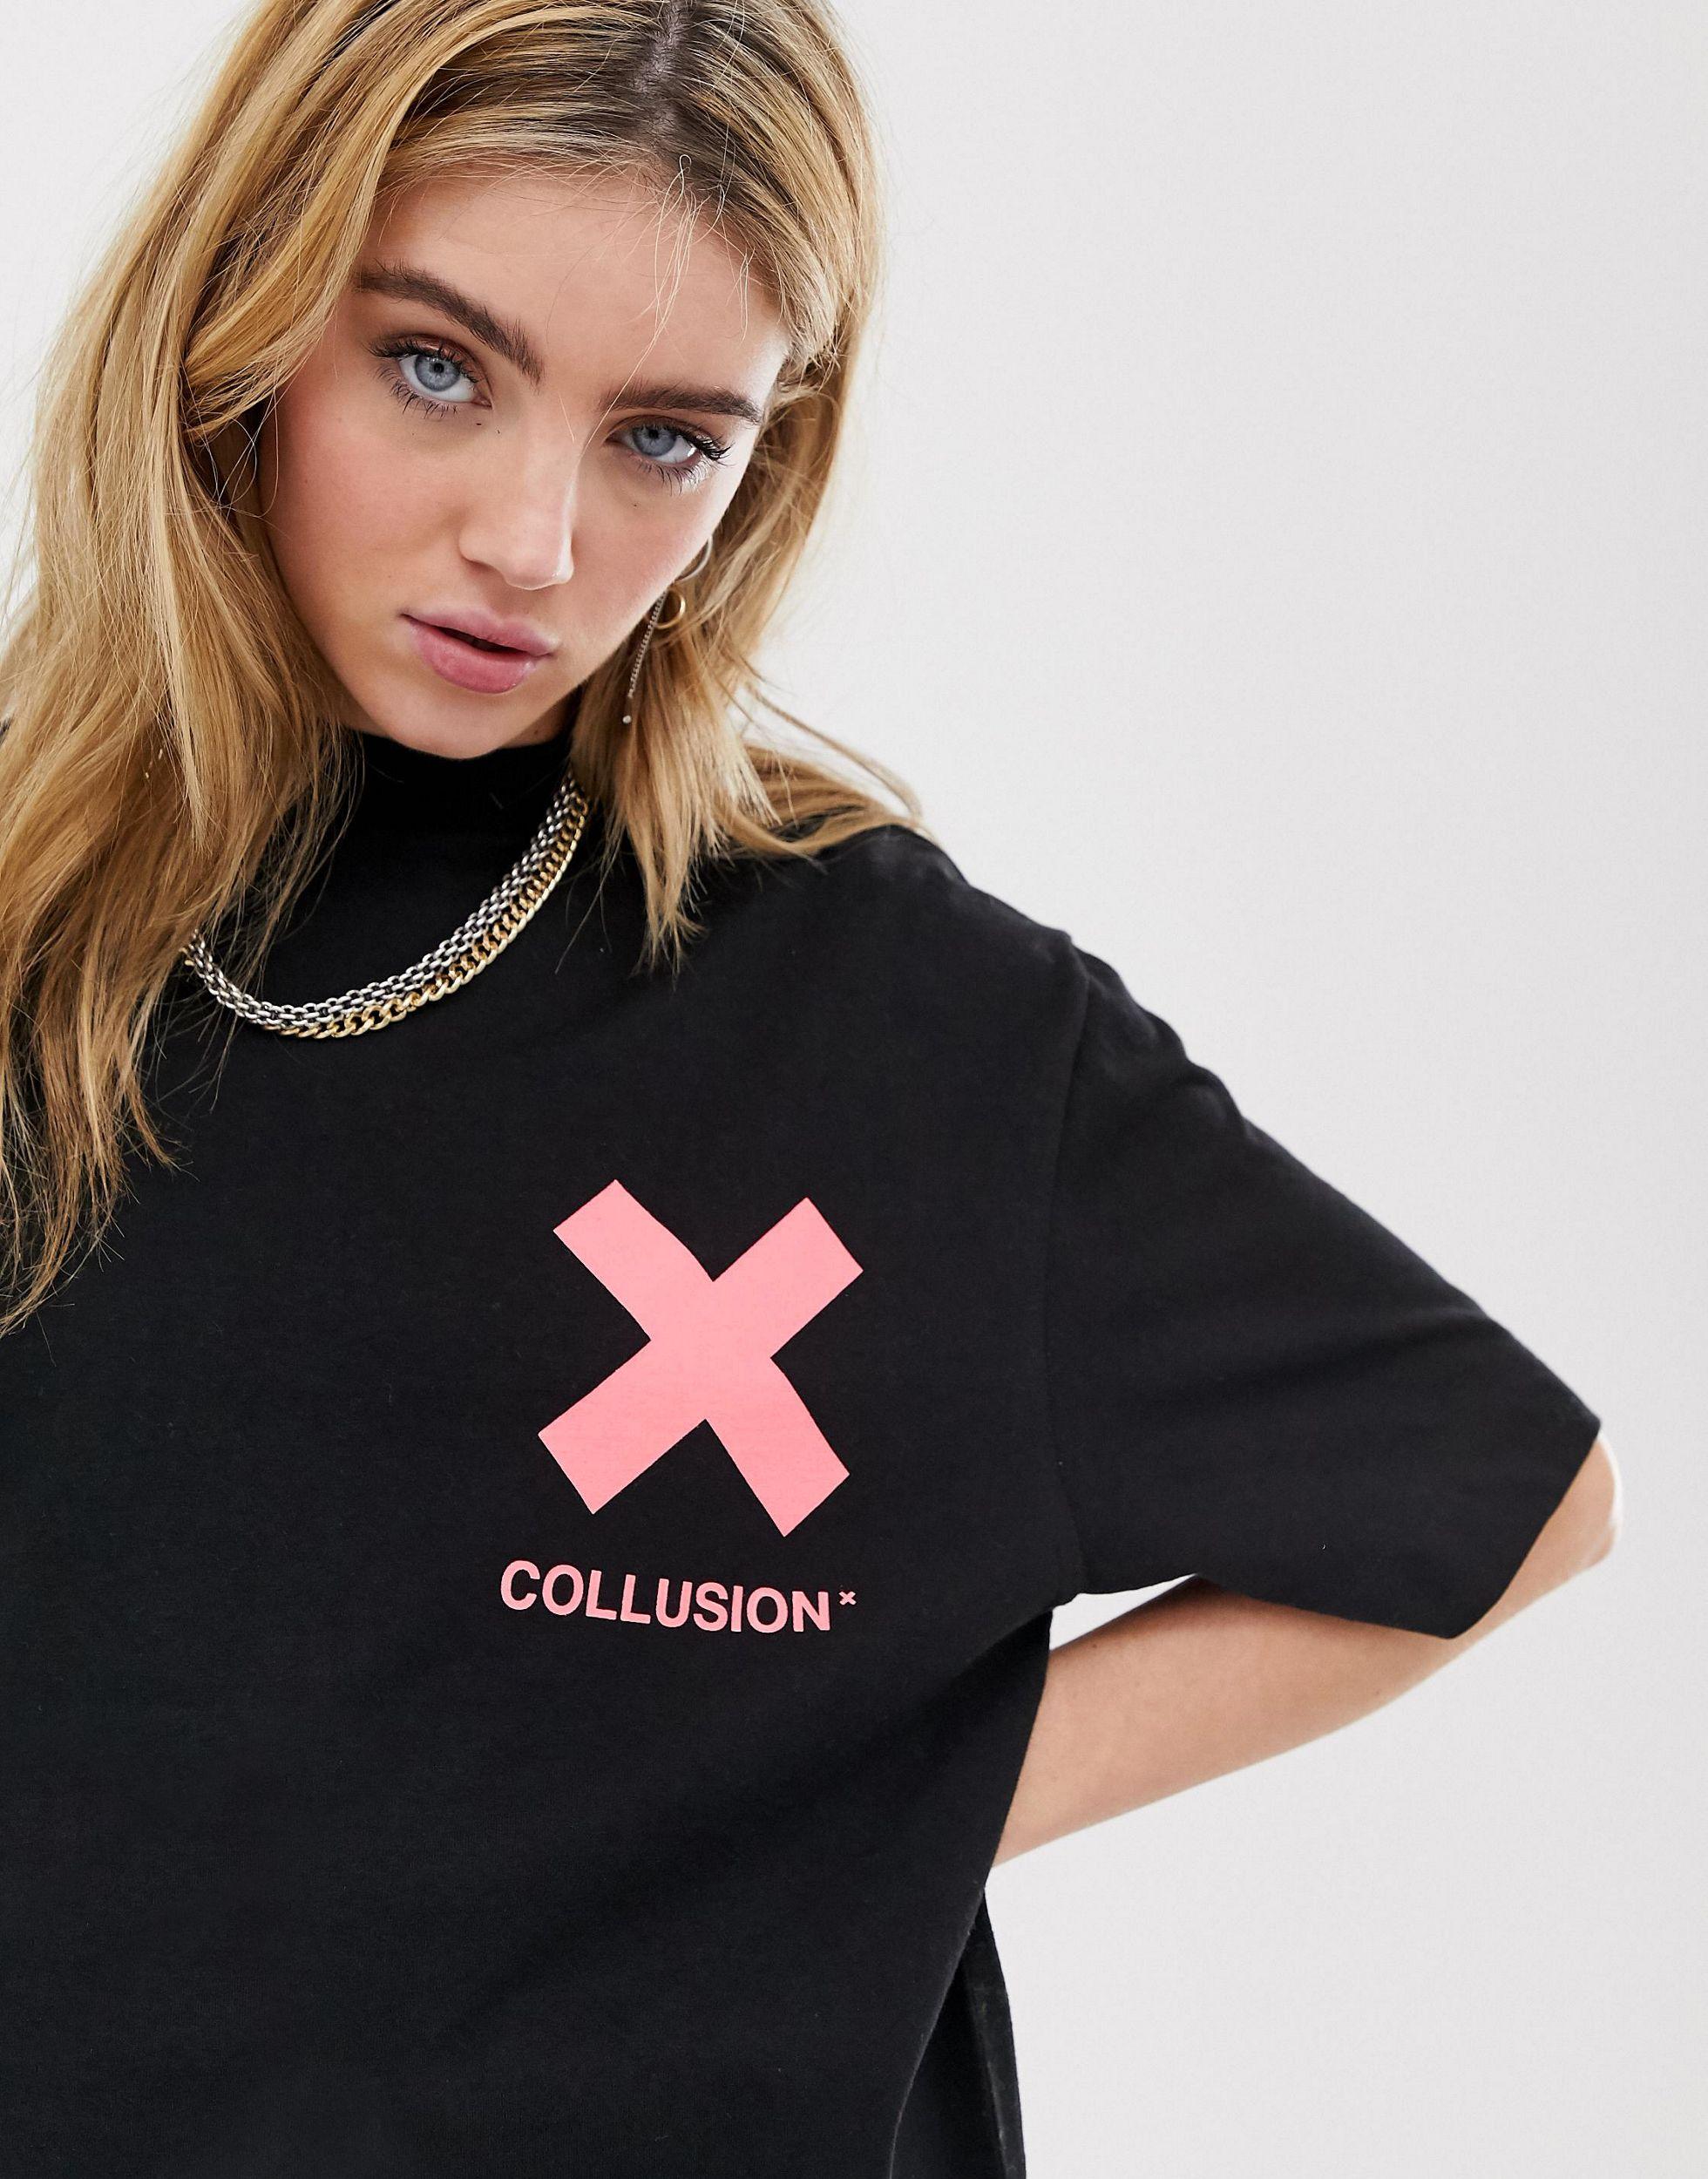 Бренд унисекс. Футболка collusion Unisex. Collusion футболка унисекс черная. Collusion бренд. Футболка с крестиками на груди.